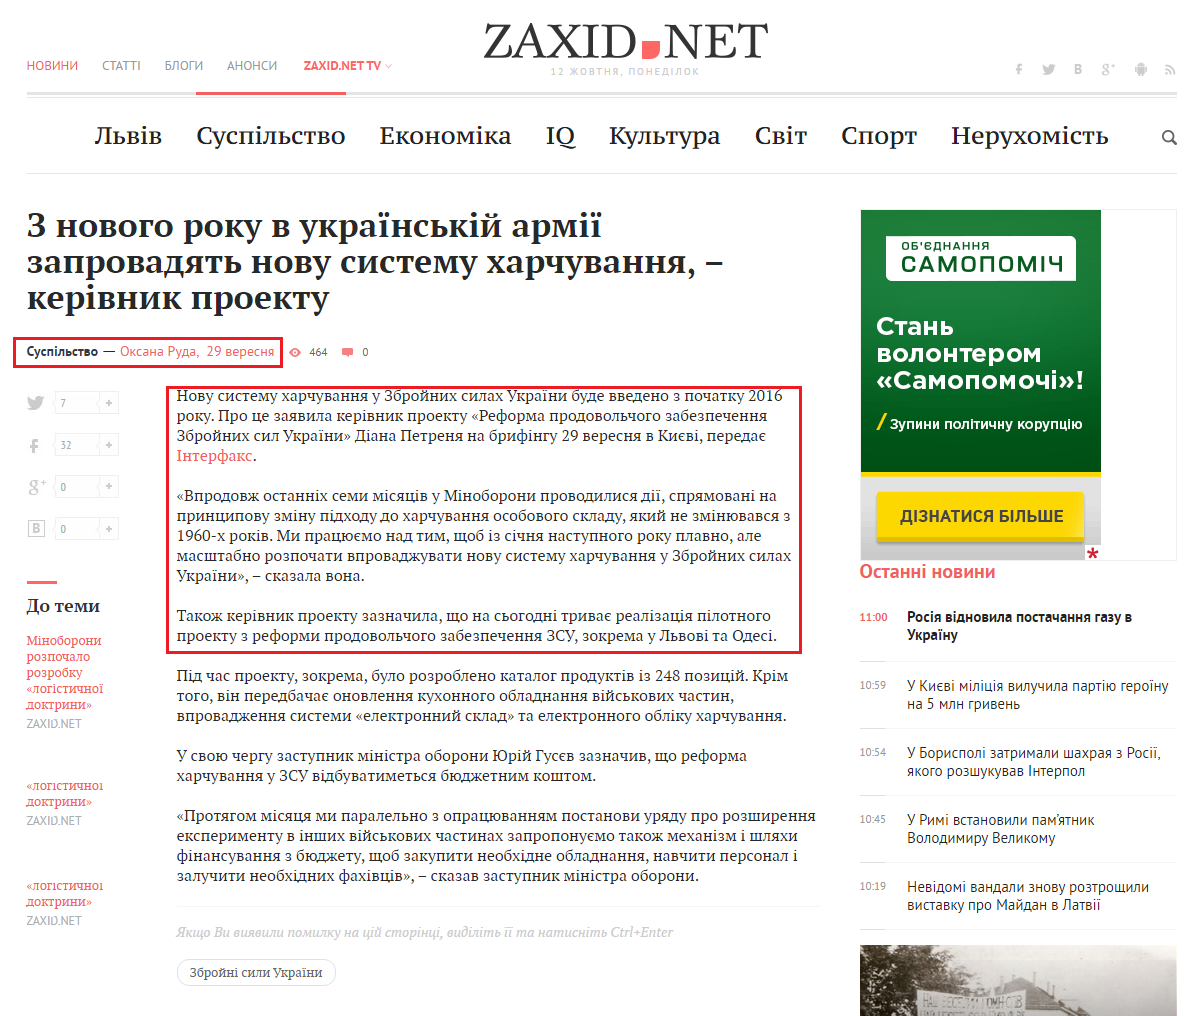 http://zaxid.net/news/showNews.do?z_novogo_roku_v_ukrayinskiy_armiyi_zaprovadyat_novu_sistemu_harchuvannya__kerivnik_proektu&objectId=1367408